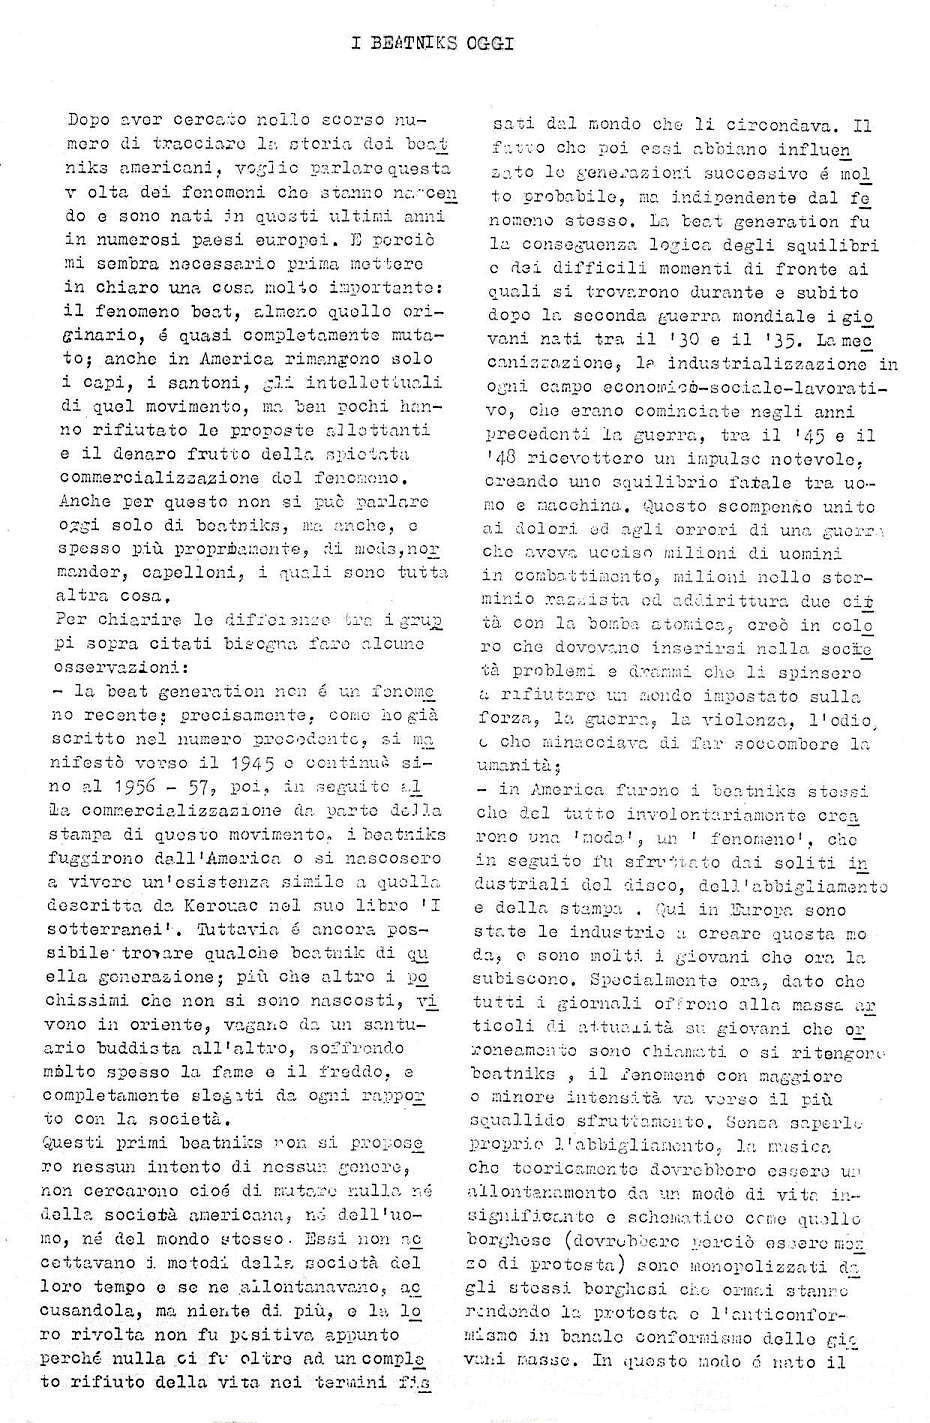 Il secondo numero della rivista Mondo Beat - Tiratura copie 5.200 - Datato 30 dicembre 1966